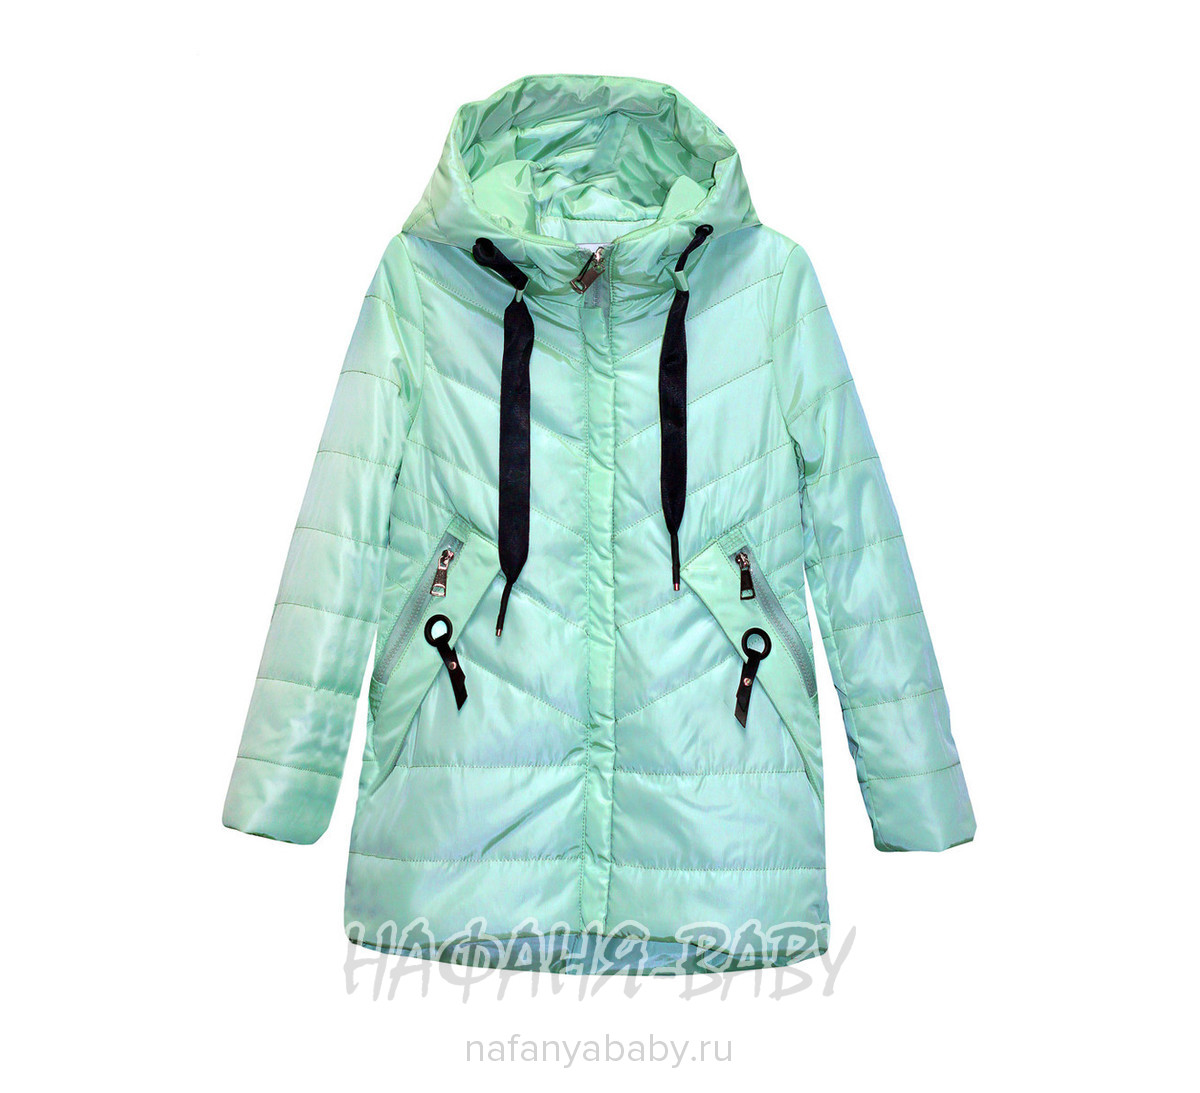 Подростковая демисезонная куртка SULAN GELIN, купить в интернет магазине Нафаня. арт: 803.